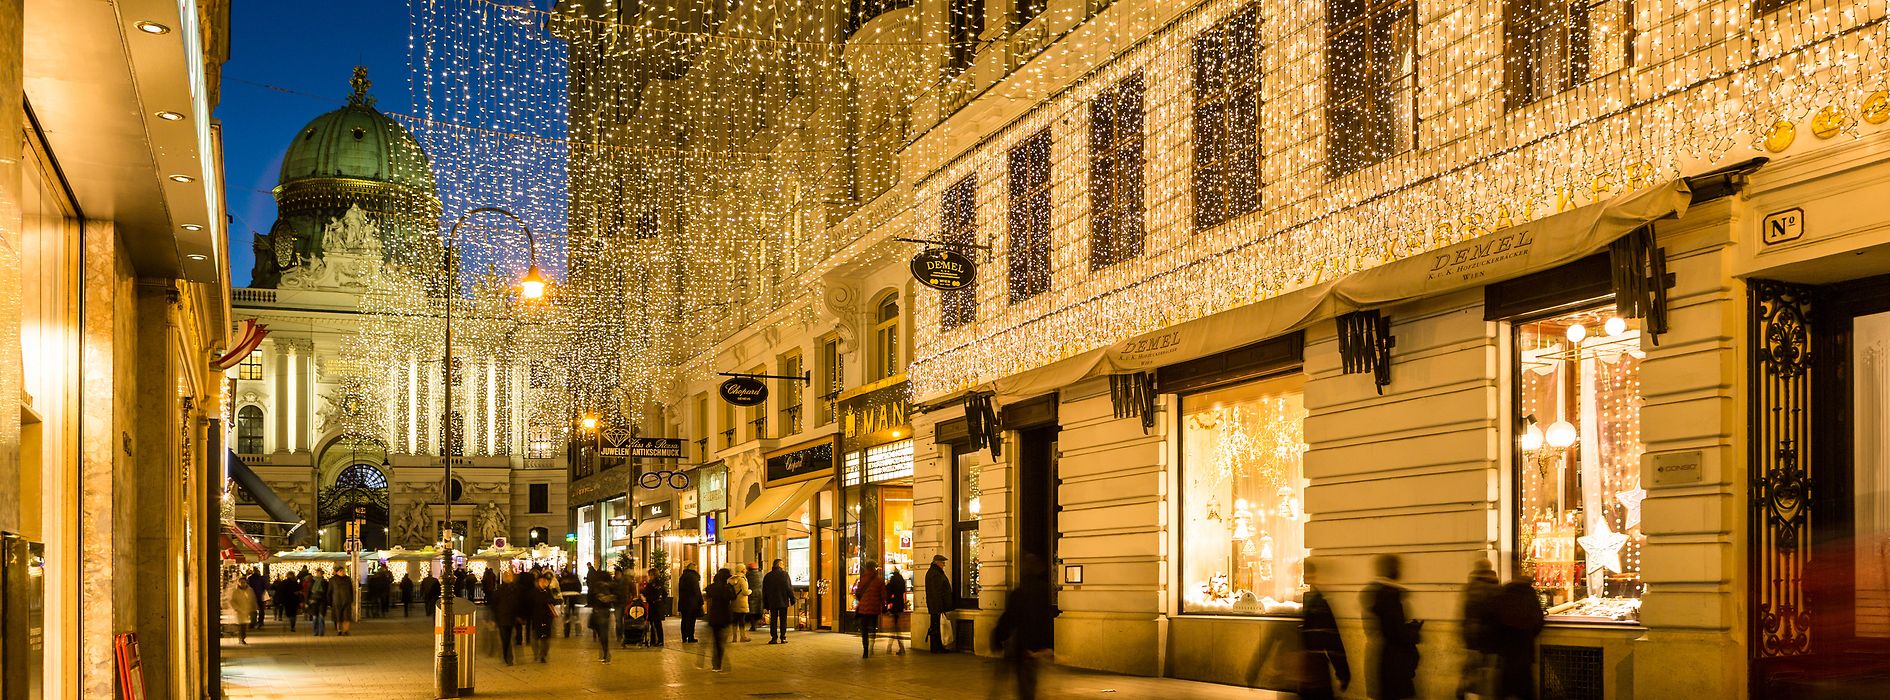 Christmas in Vienna – Christmas lights on Kohlmarkt